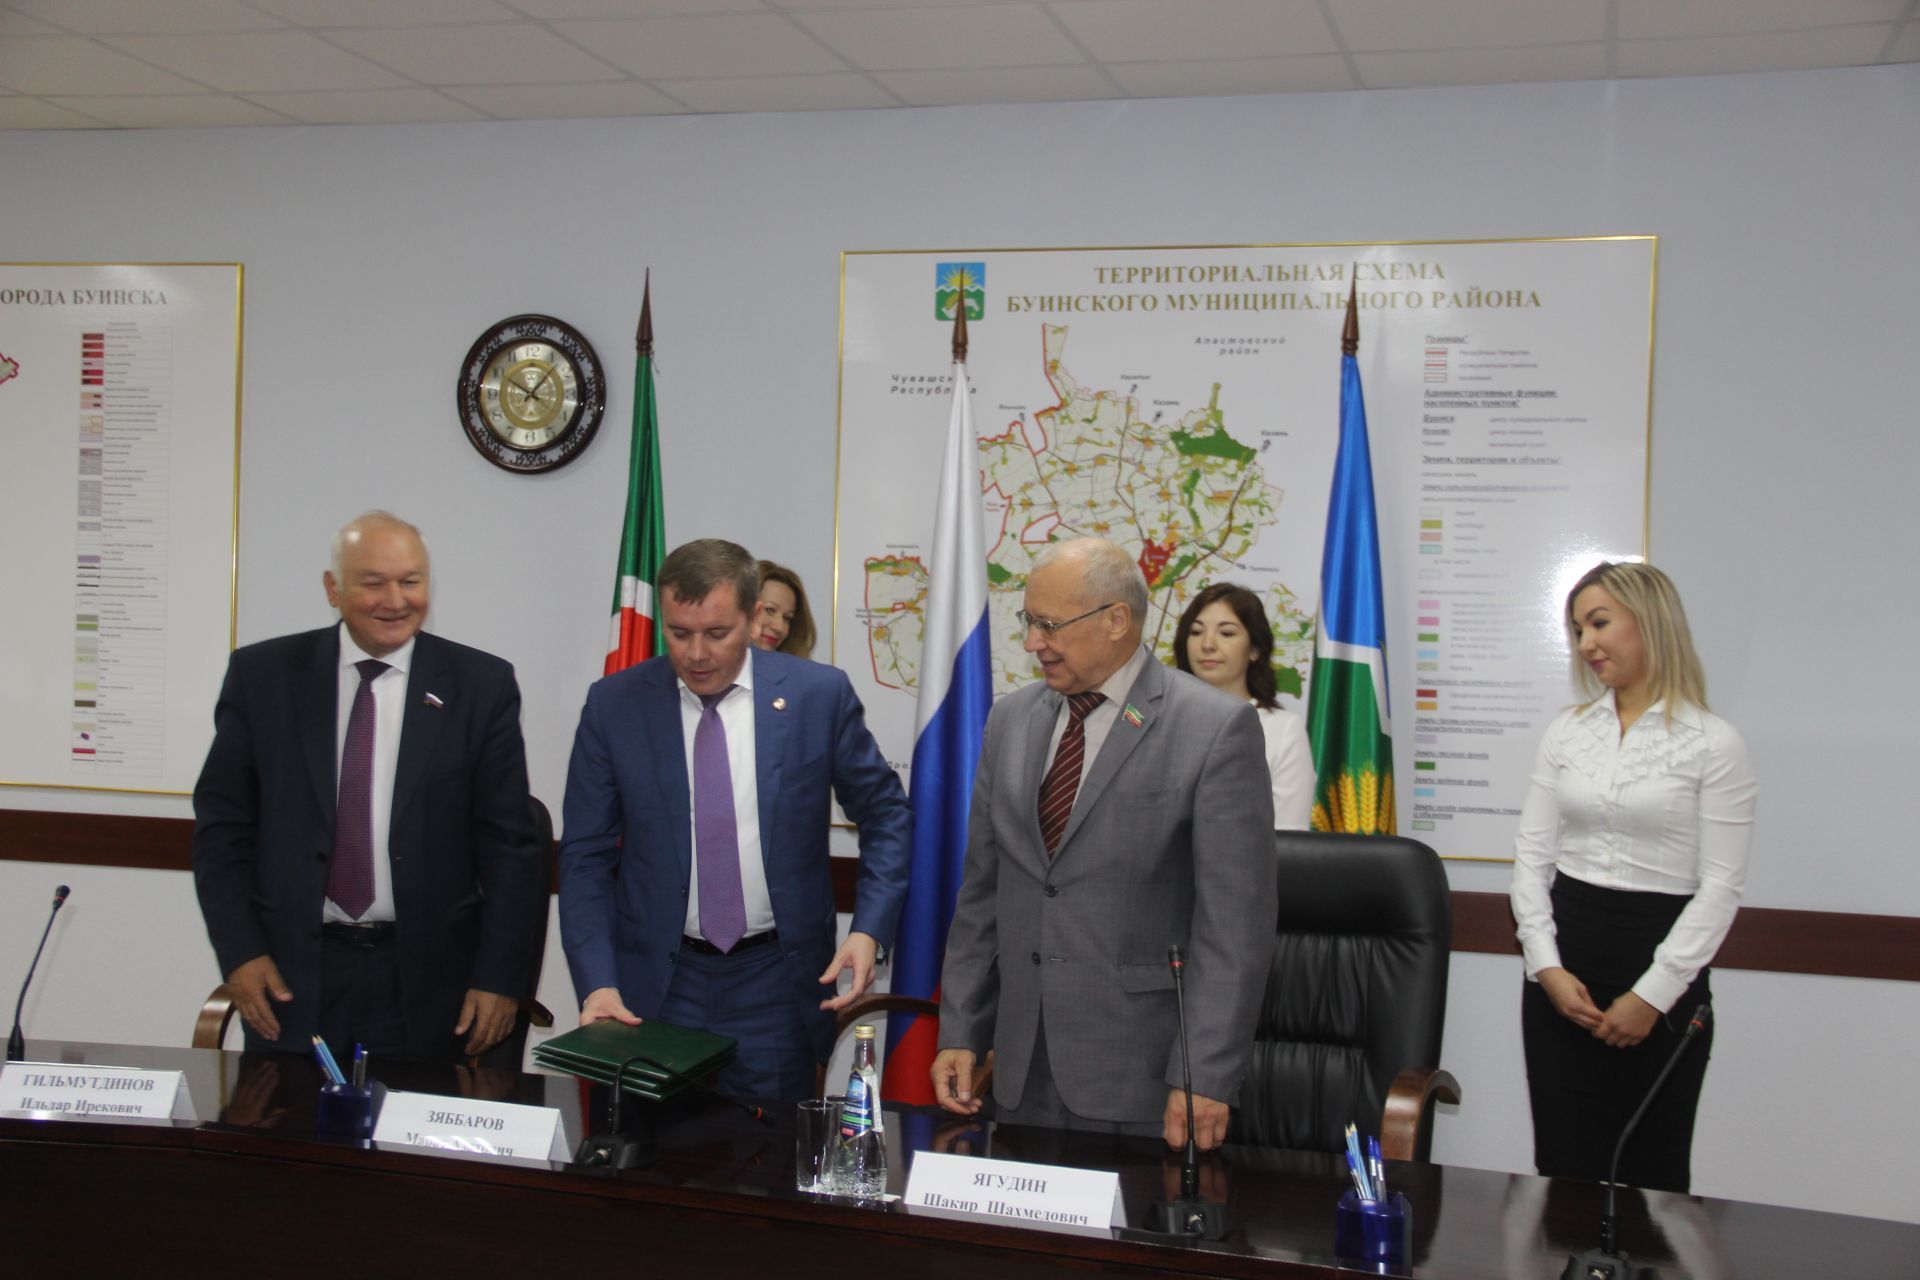 Сегодня в Буинске состоялось подписание нового трехстороннего соглашения